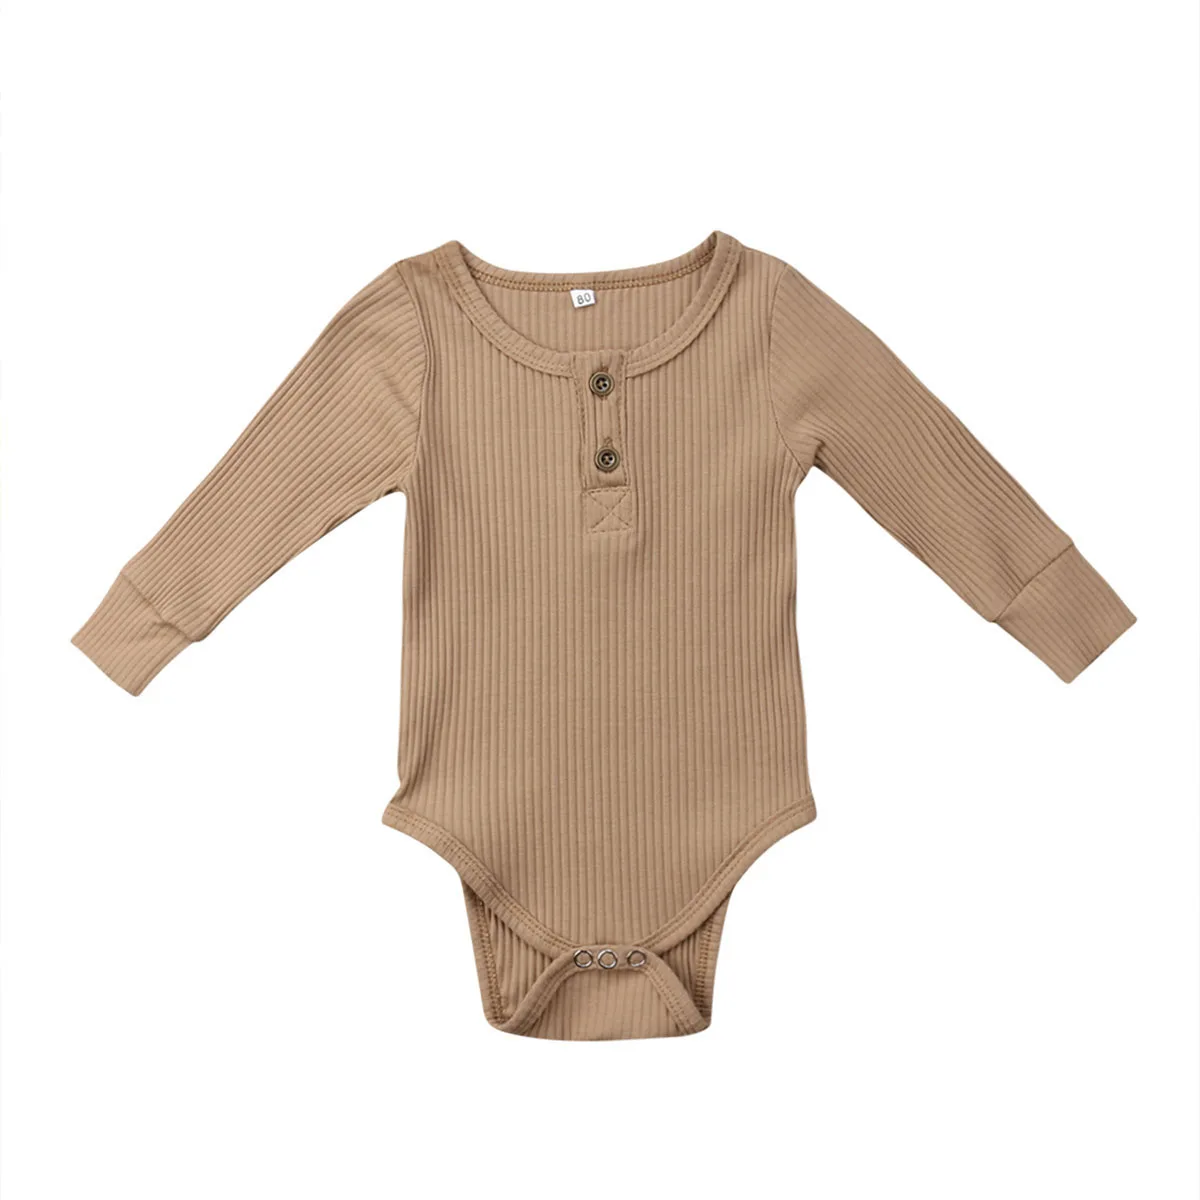 Одежда для новорожденных девочек и мальчиков, одежда для новорожденных боди, хлопковый комбинезон унисекс с длинными рукавами, цельнокроеный костюм в рубчик для альпинизма на возраст от 0 до 24 месяцев